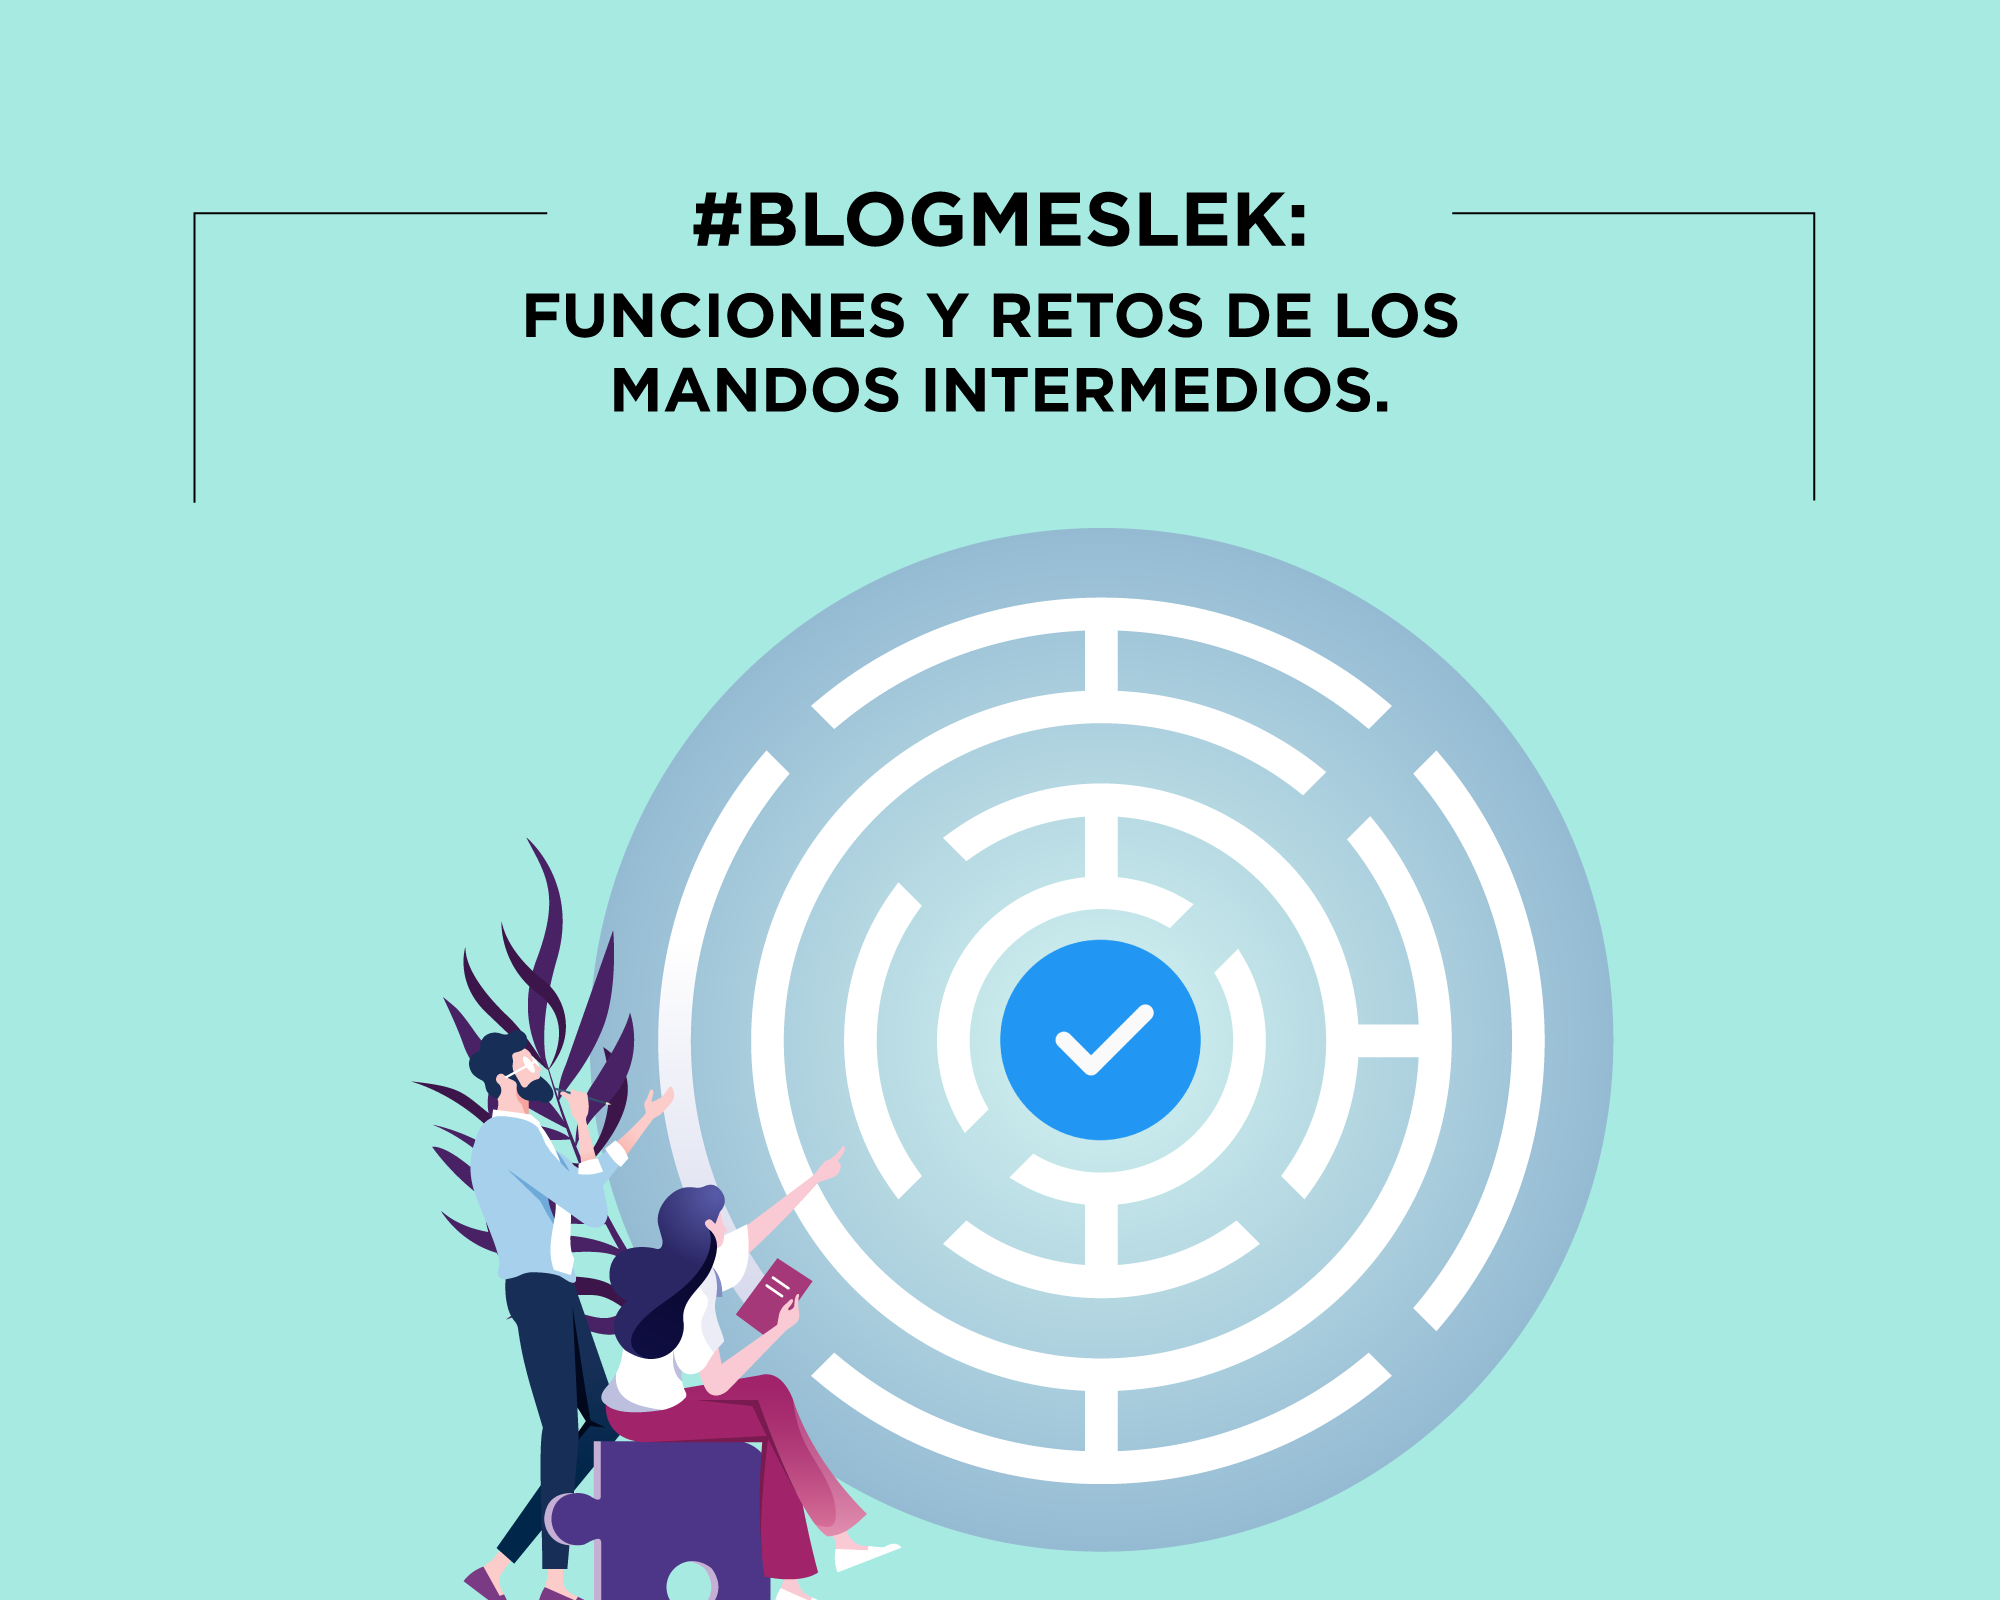 #BlogMeslek: Funciones y retos de los mandos intermedios.